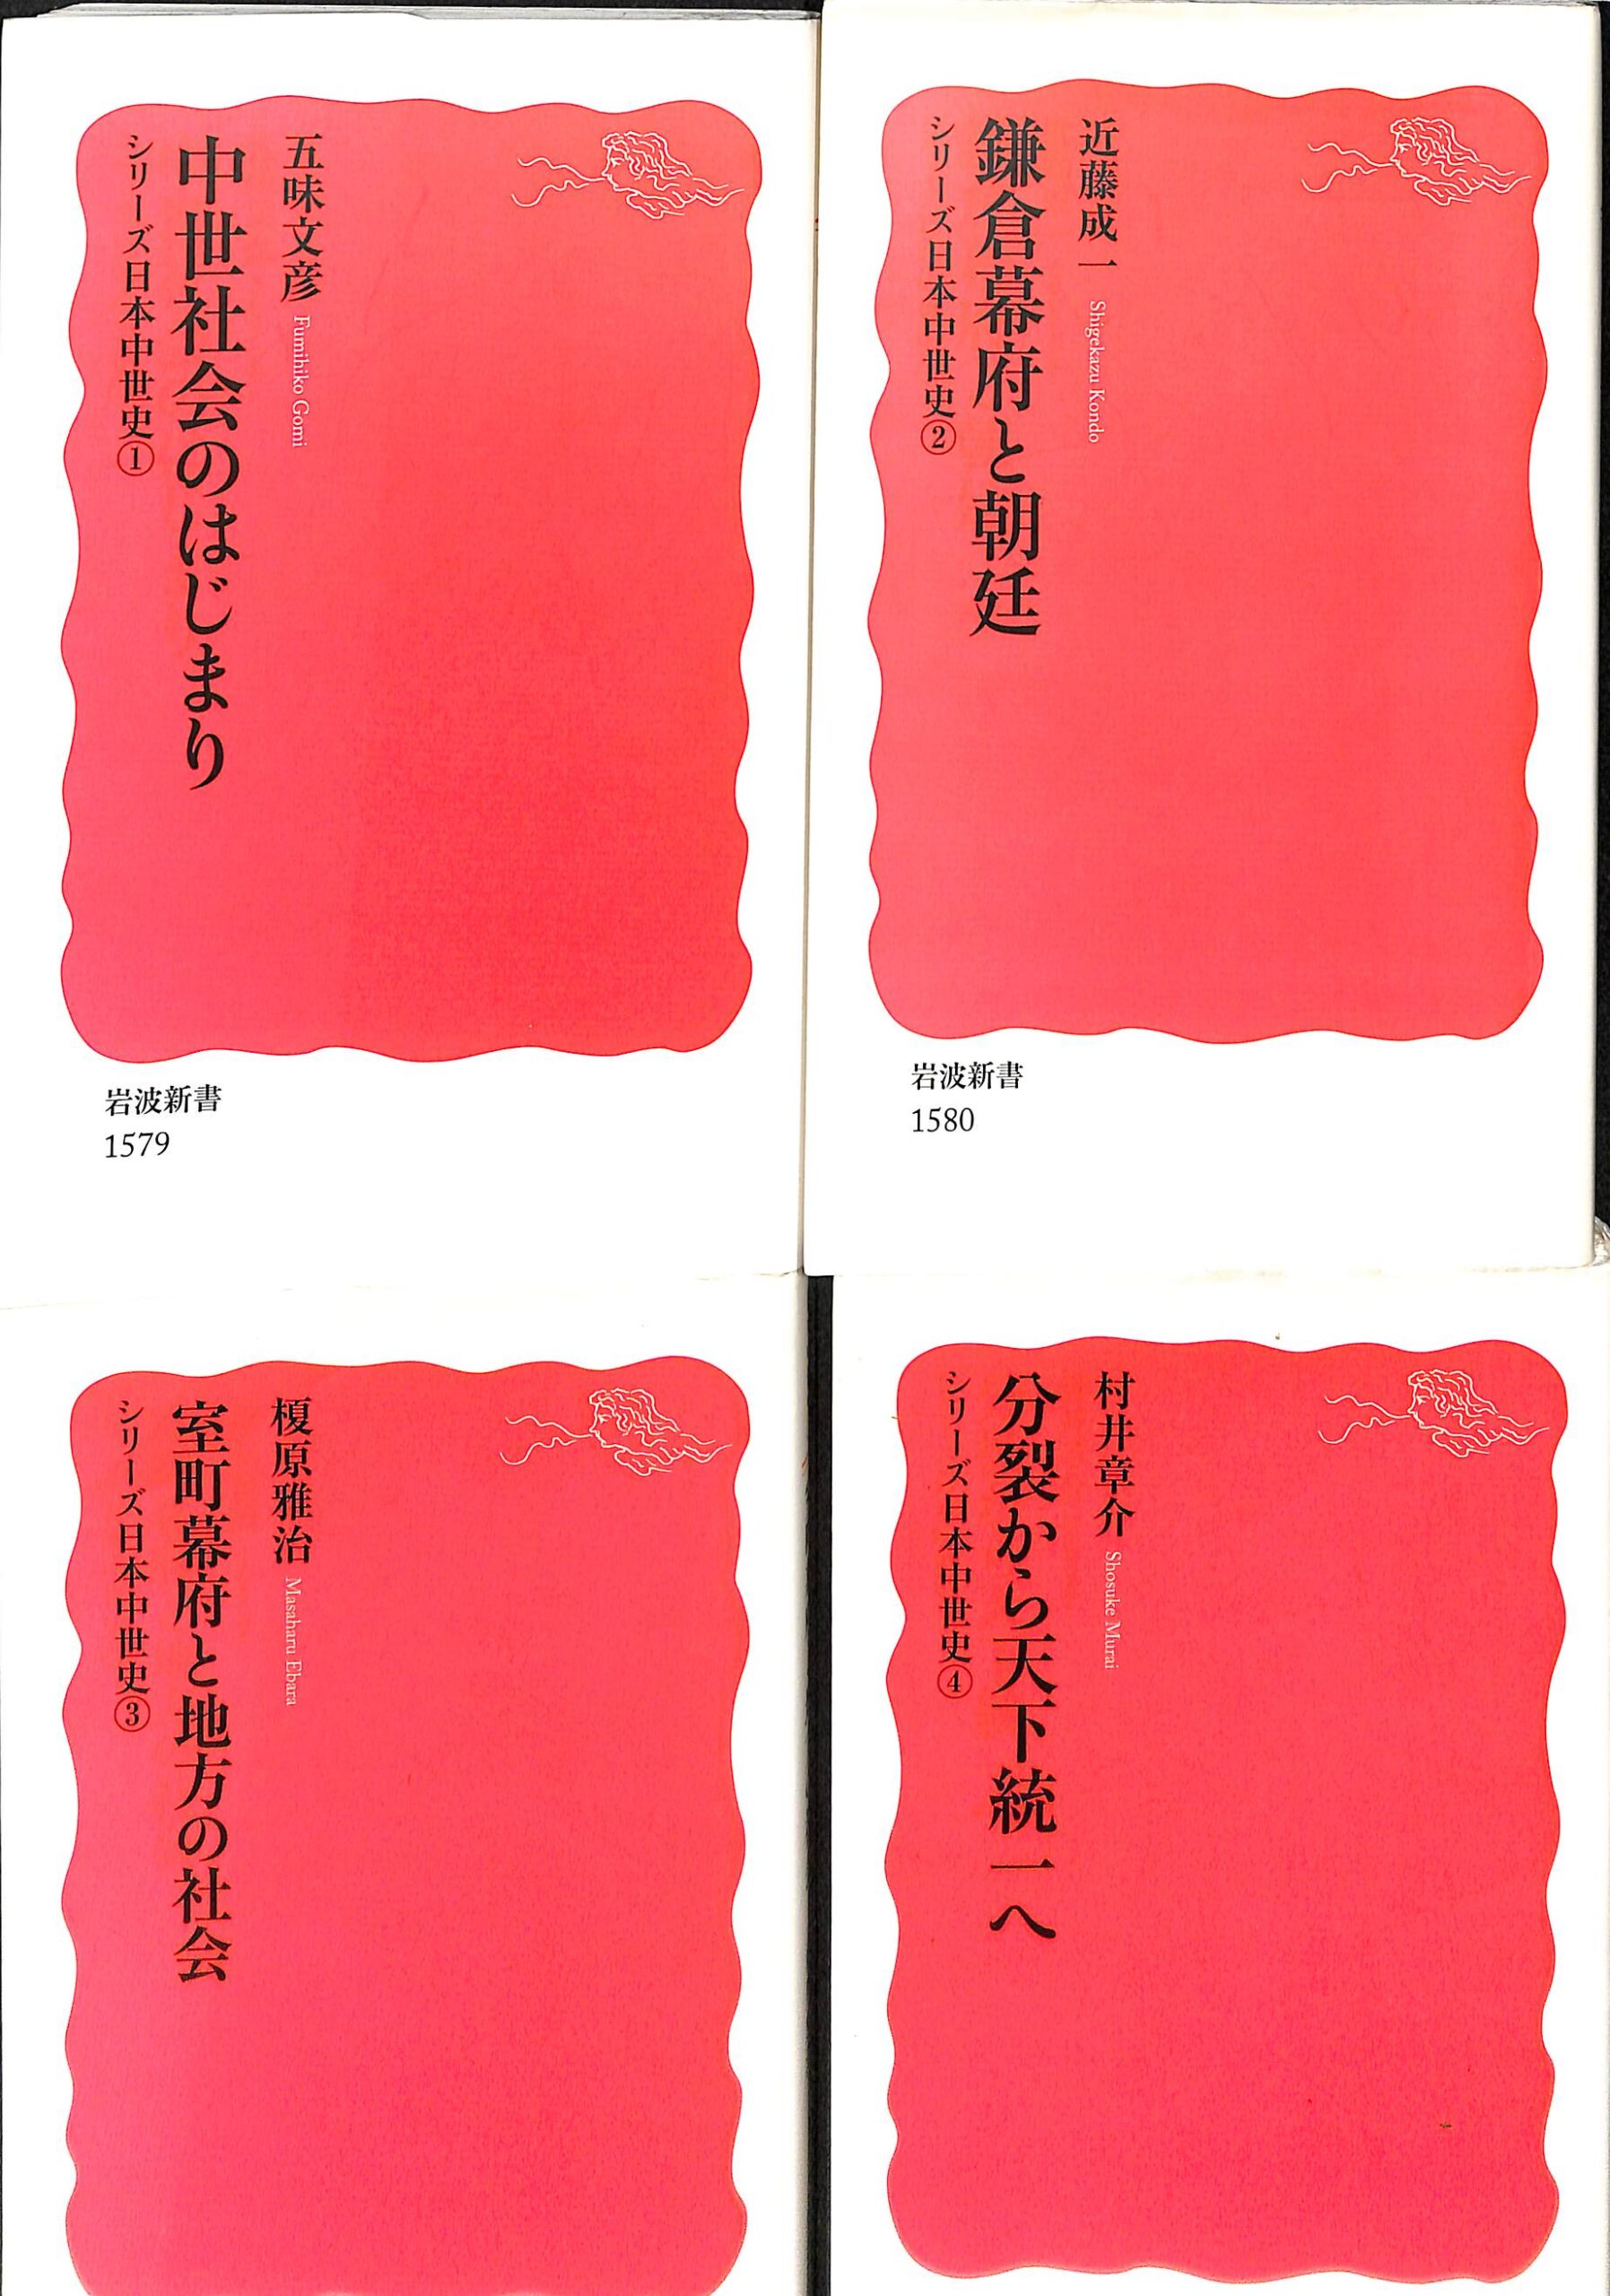 村井章介　シリーズ日本中世史　古本よみた屋　全4巻揃　おじいさんの本、買います。